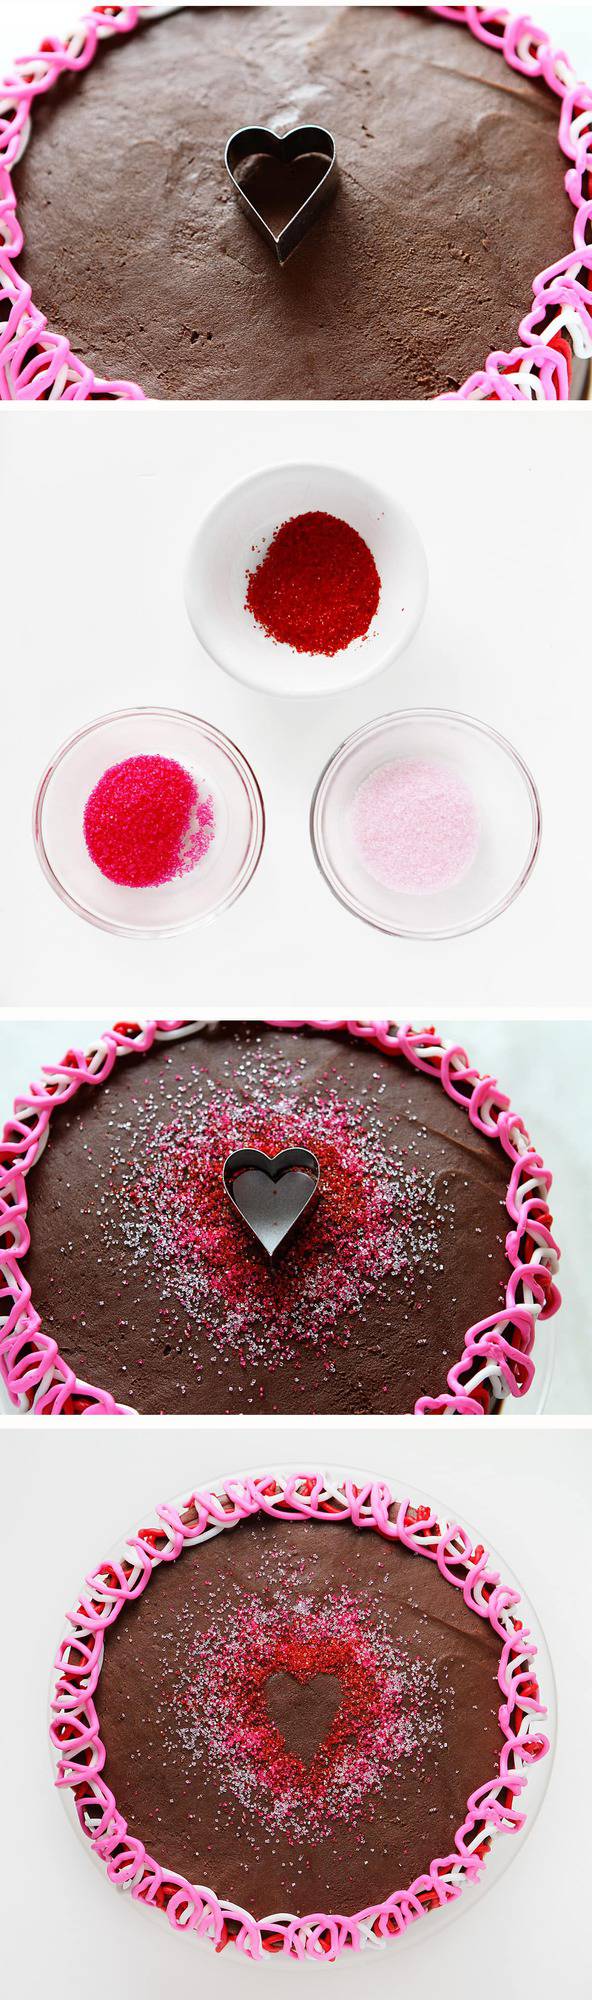 心形的蛋糕装饰-完美的情人节!bob投注体育网站